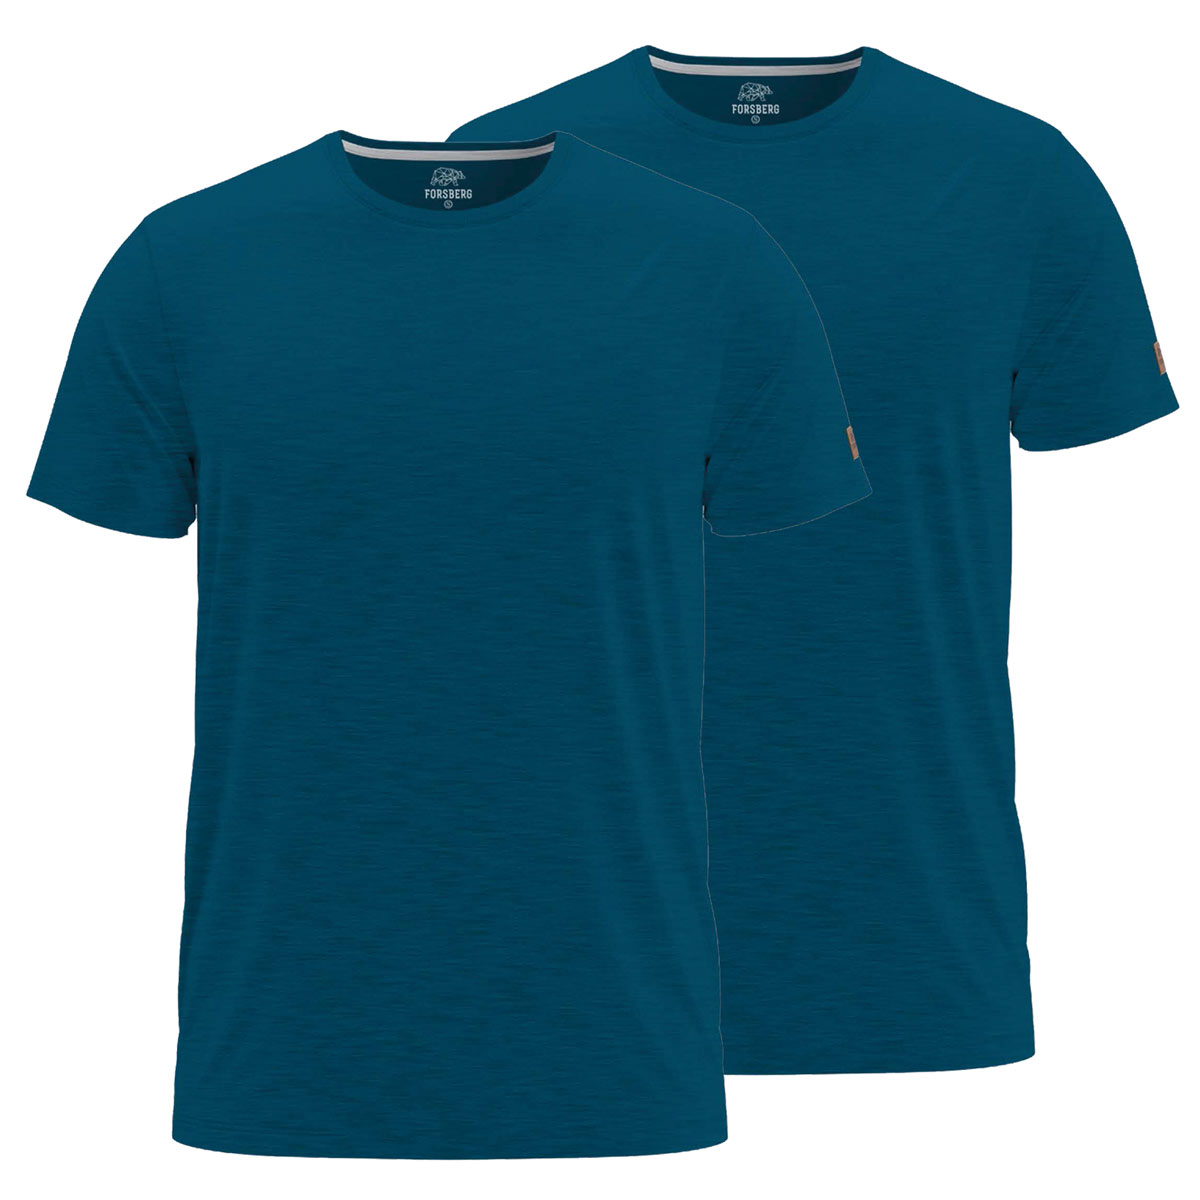 FORSBERG einfarbiges T-Shirt im Doppelpack - 13